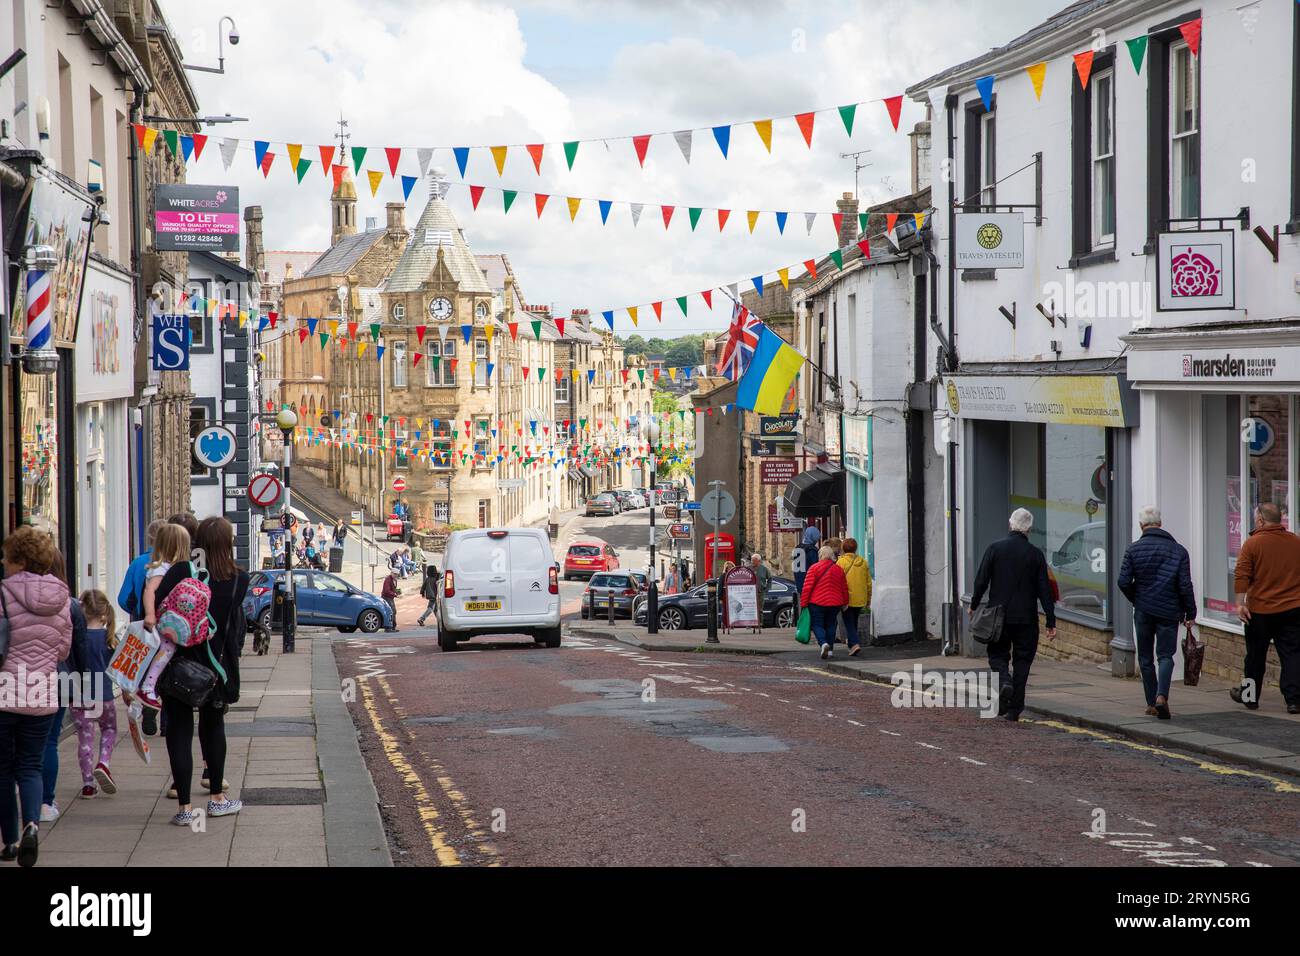 Clitheroe , ville du Lancashire en Angleterre, jours d'été 2022 avec des magasins et des magasins et des banderoles de rue dans le centre-ville, Royaume-Uni Banque D'Images